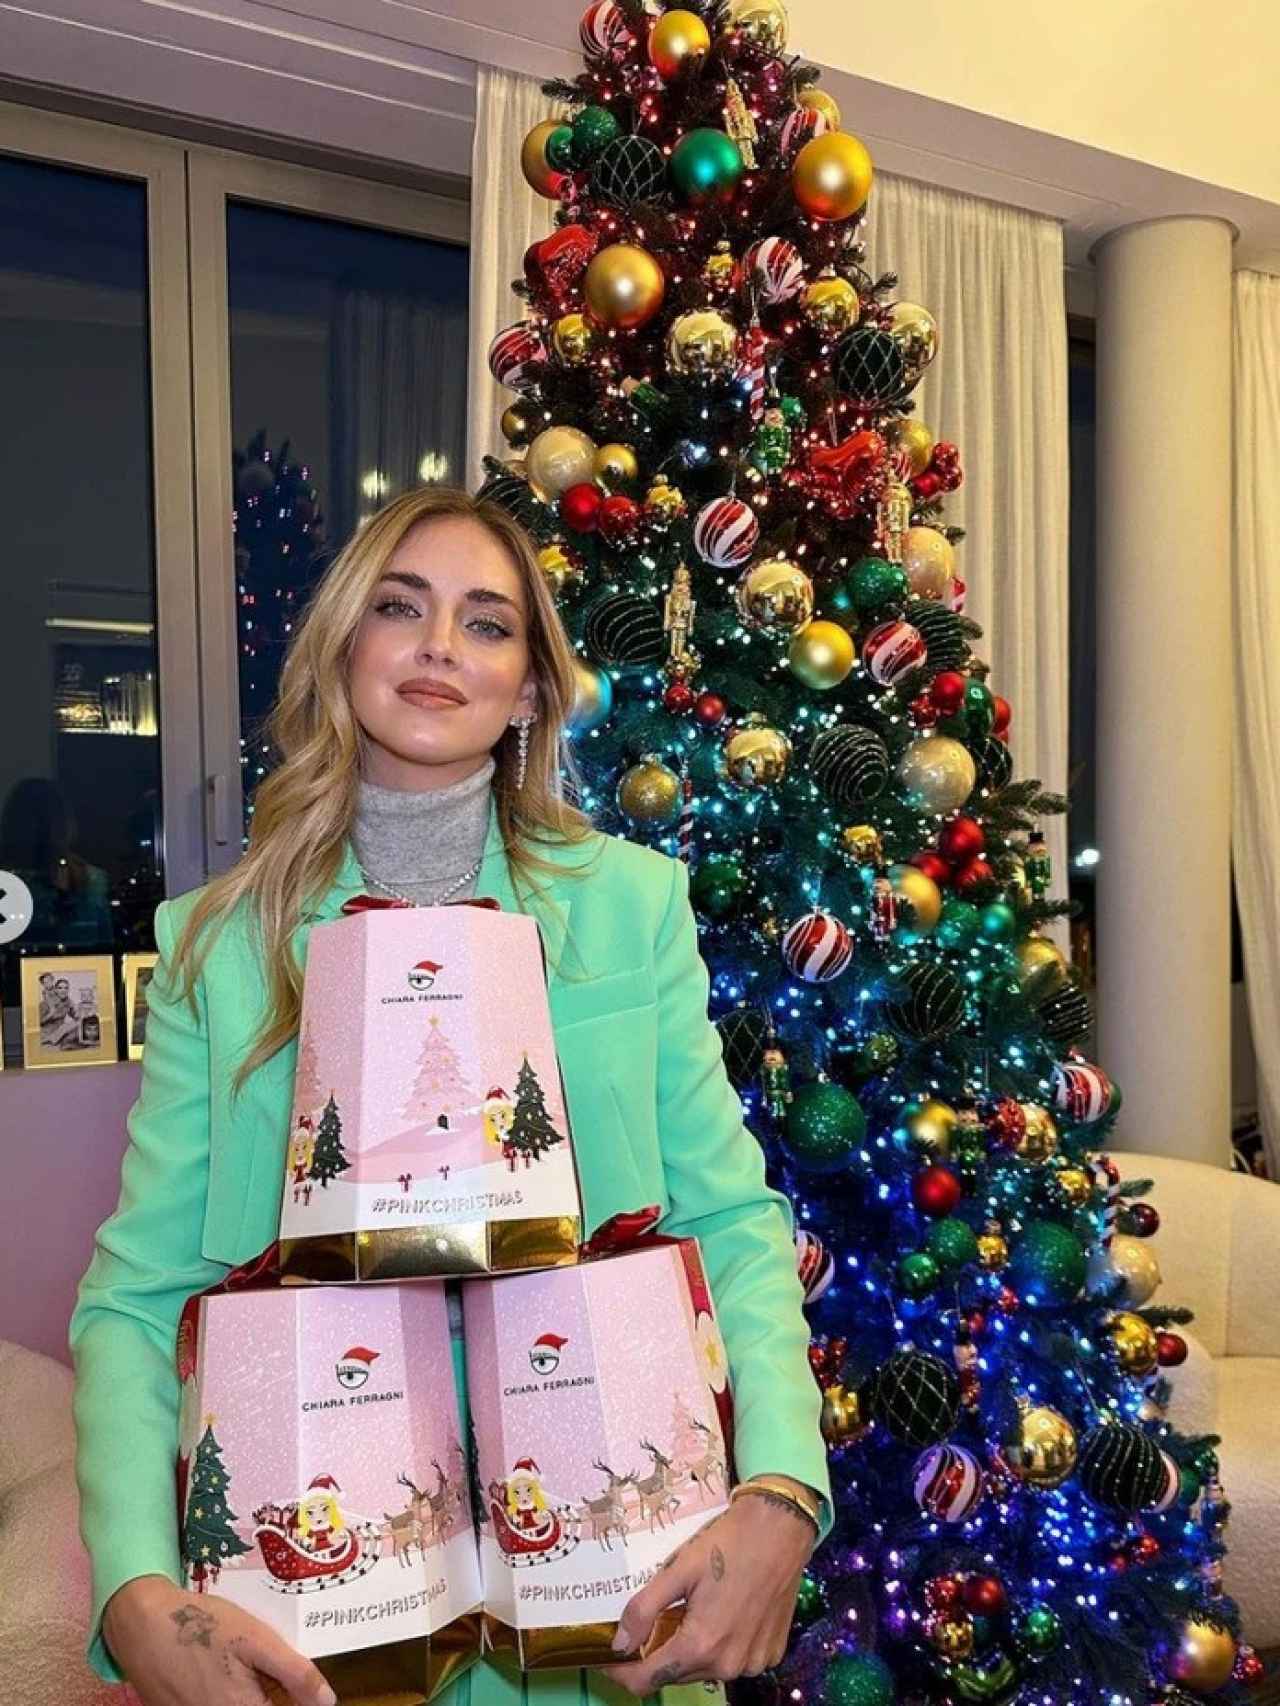 La 'influencer' Chiara Ferragni promocionando los dulces navideños.